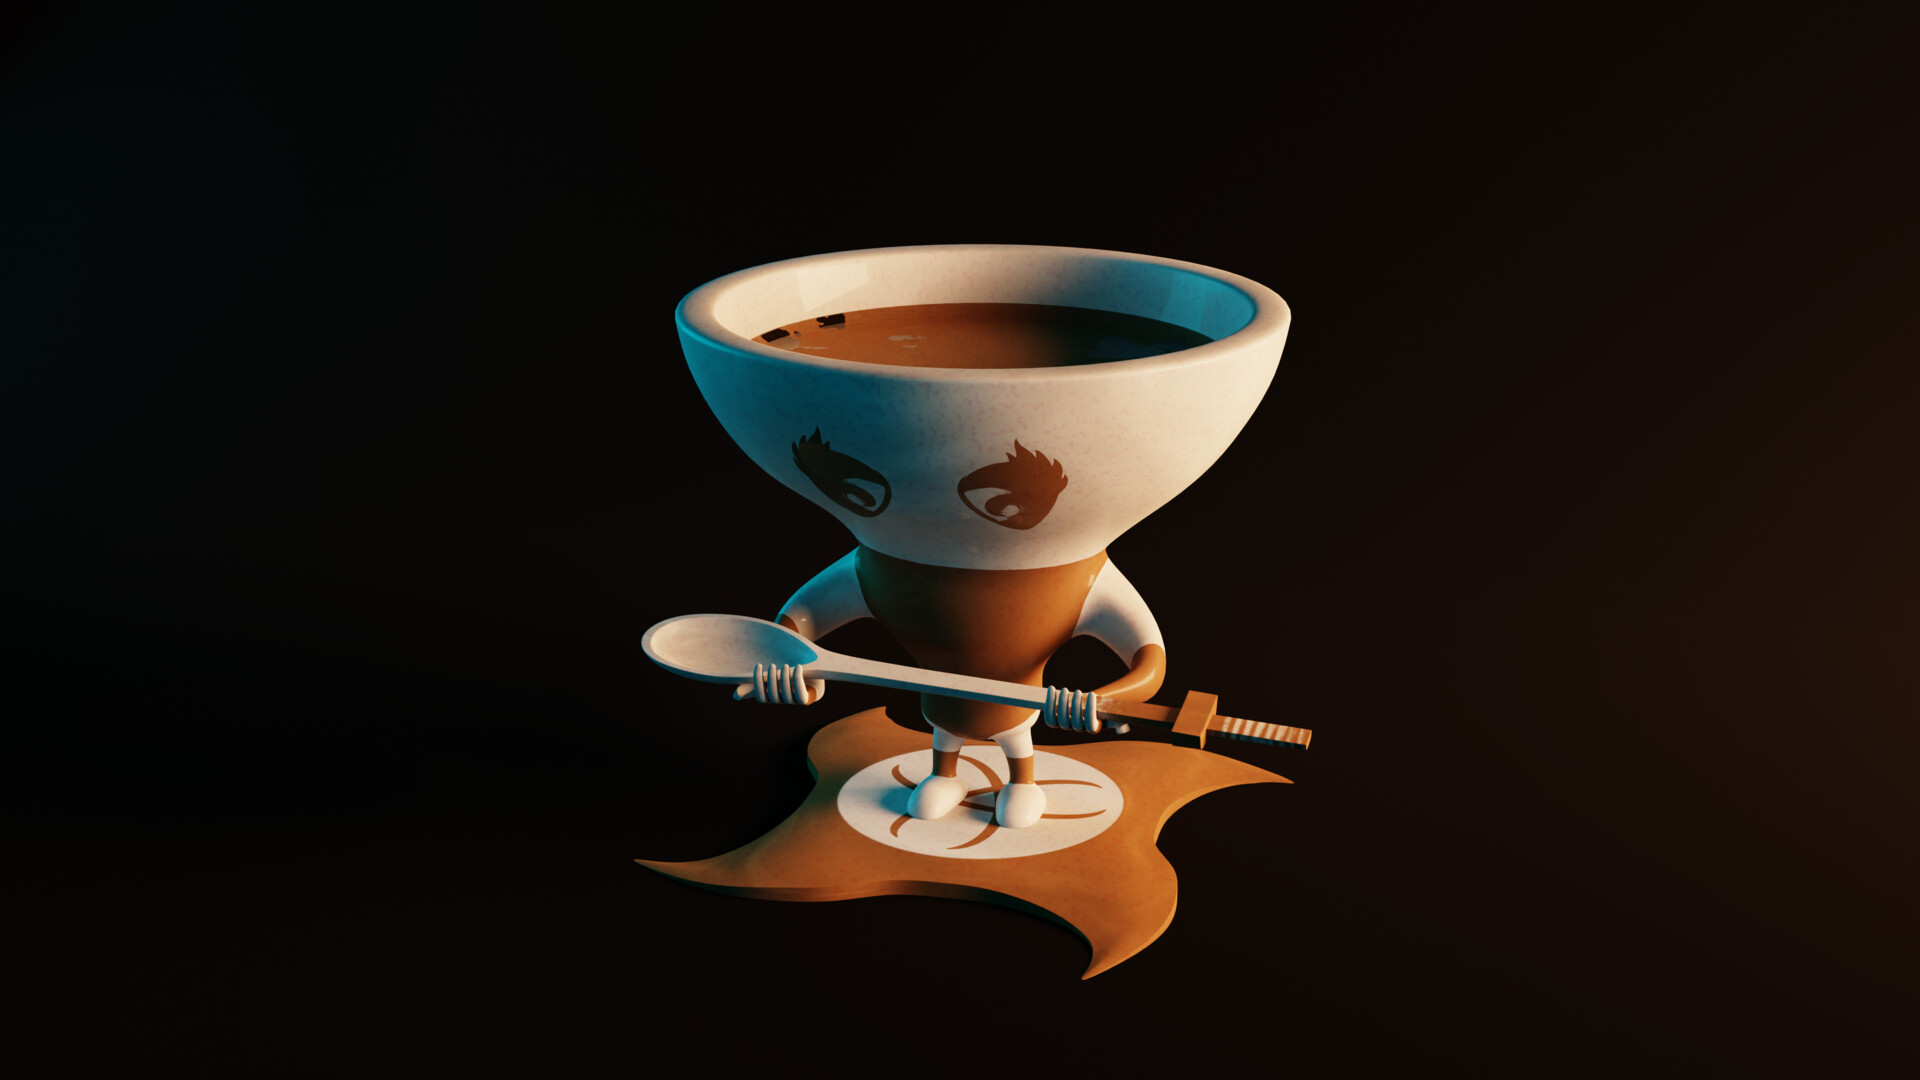 https://cdnb.artstation.com/p/assets/images/images/038/072/733/large/mister-bevy-ninja-cup-006.jpg?1622092153